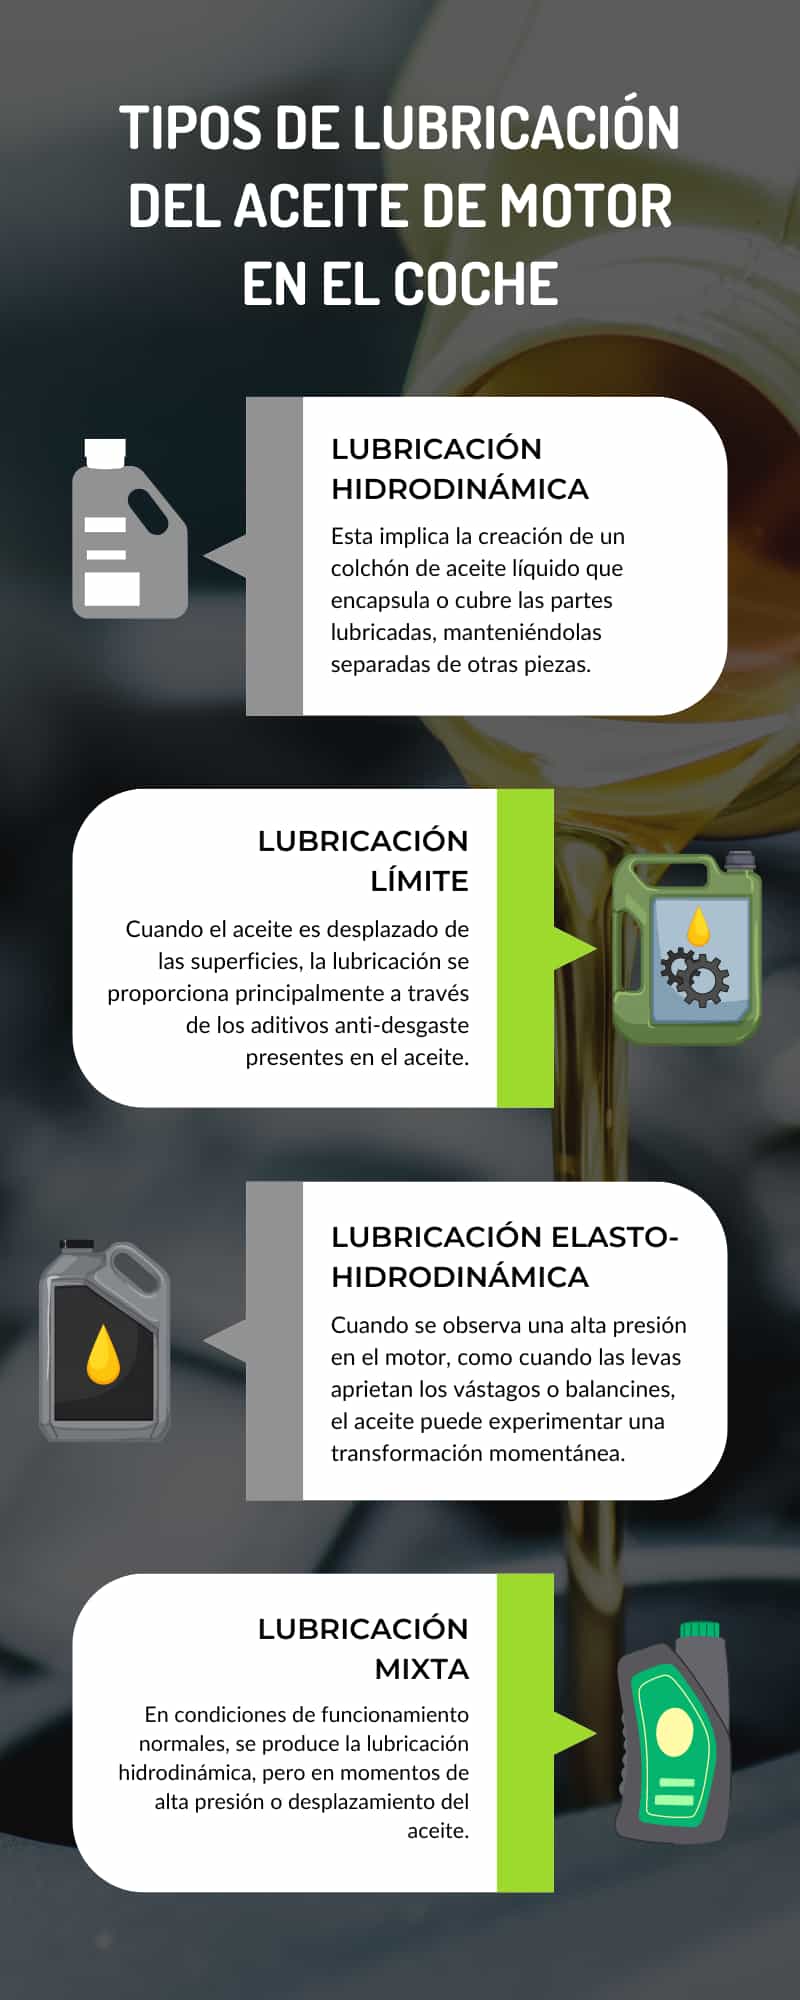 Tipos de lubricación del aceite en el coche